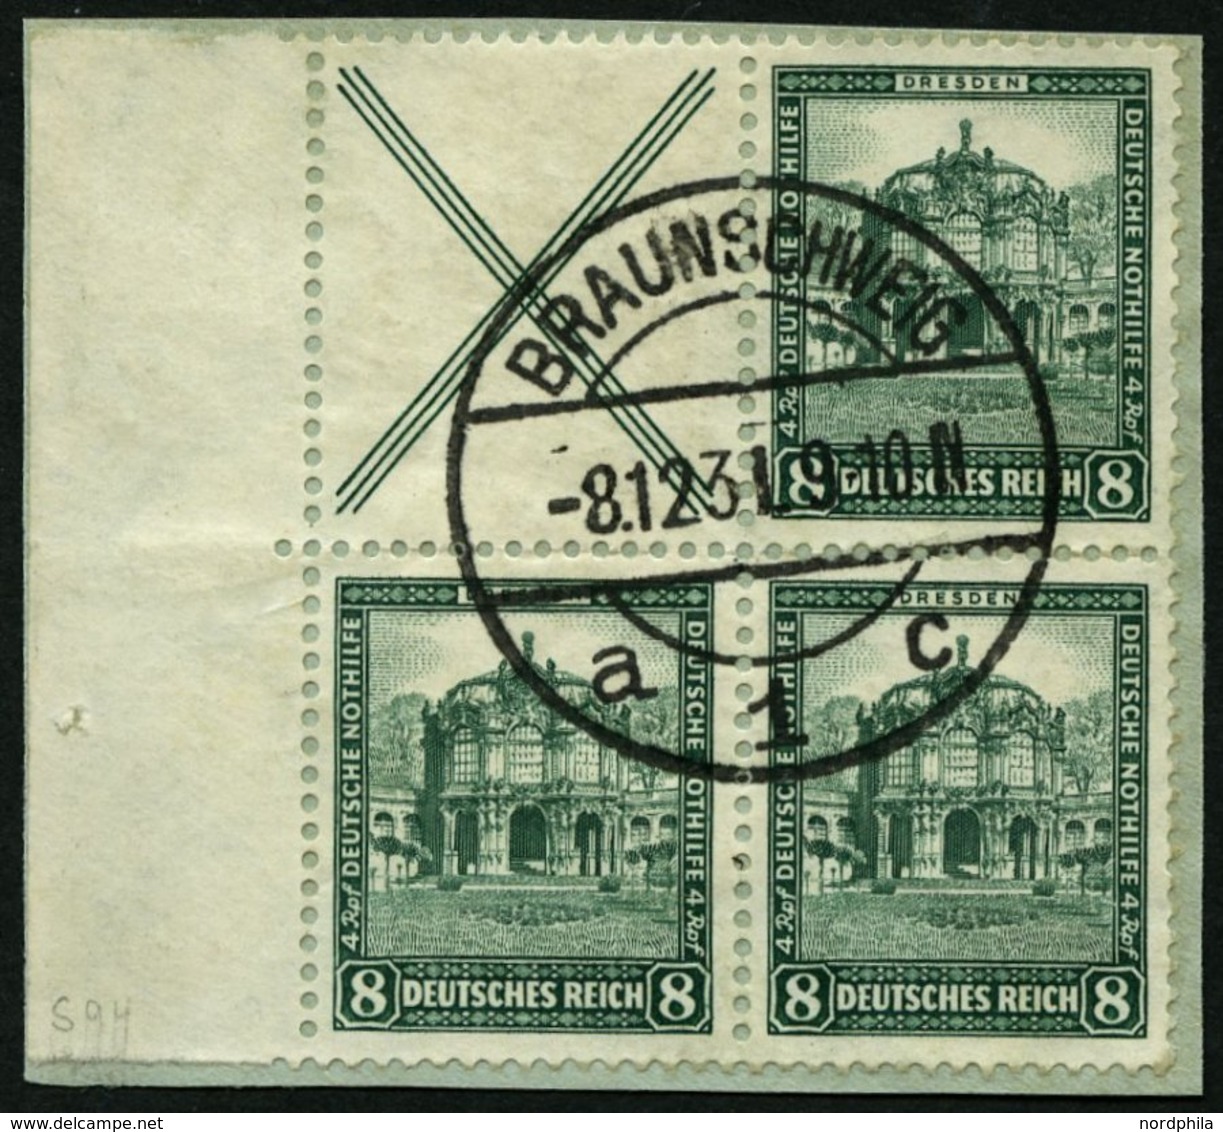 ZUSAMMENDRUCKE S 94 BrfStk, 1931, Nothilfe X + 8, Prachtbriefstück, Mi. (380.-) - Zusammendrucke